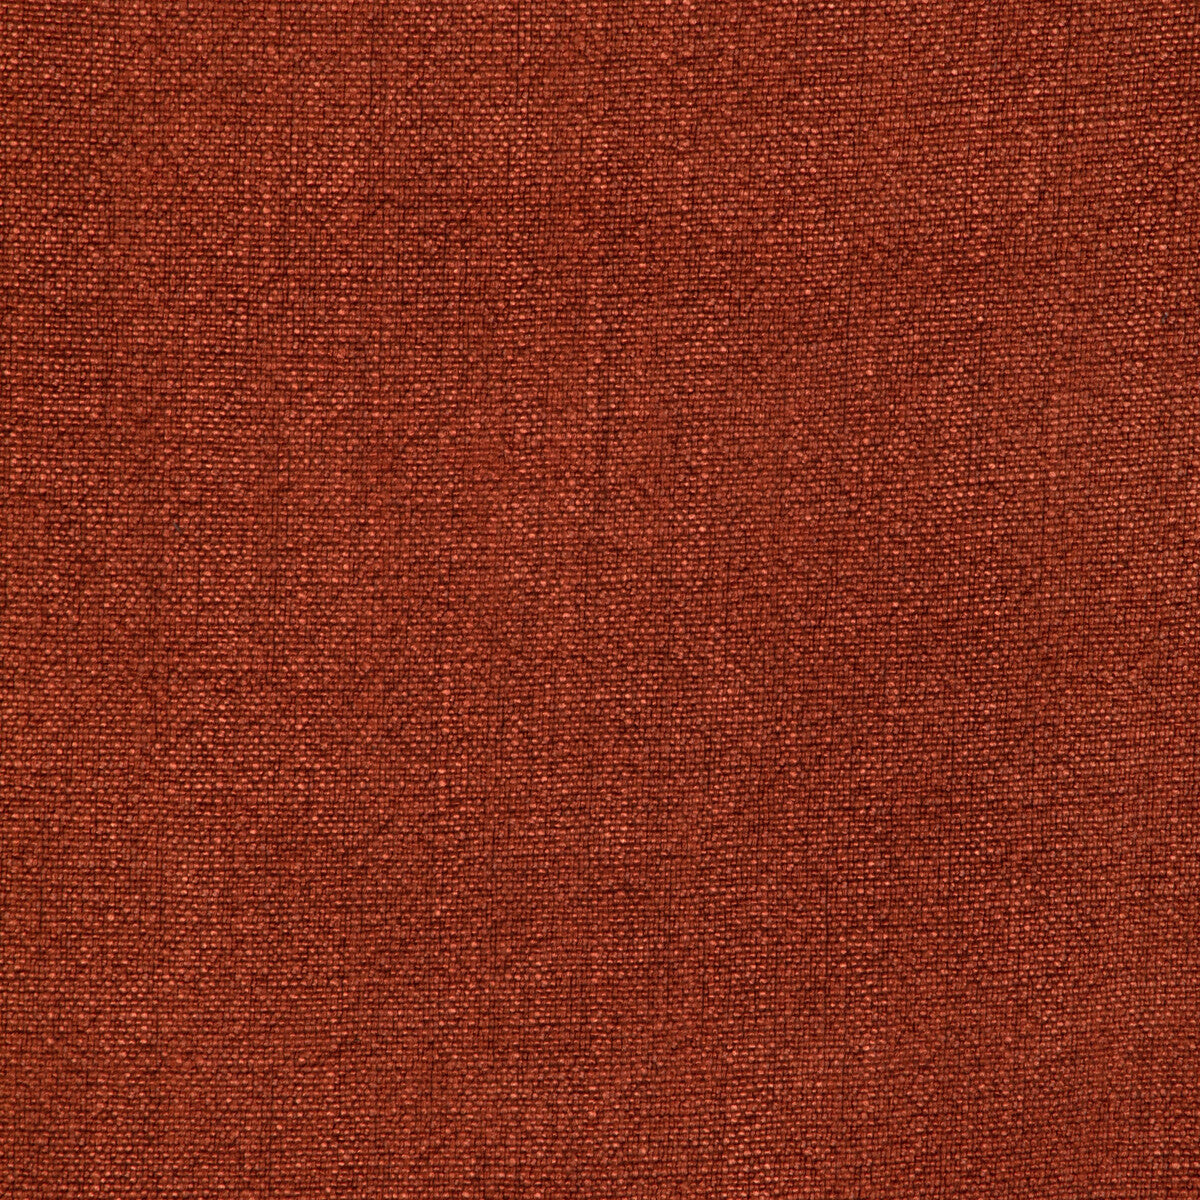 Kravet Basics fabric in 35189-124 color - pattern 35189.124.0 - by Kravet Basics